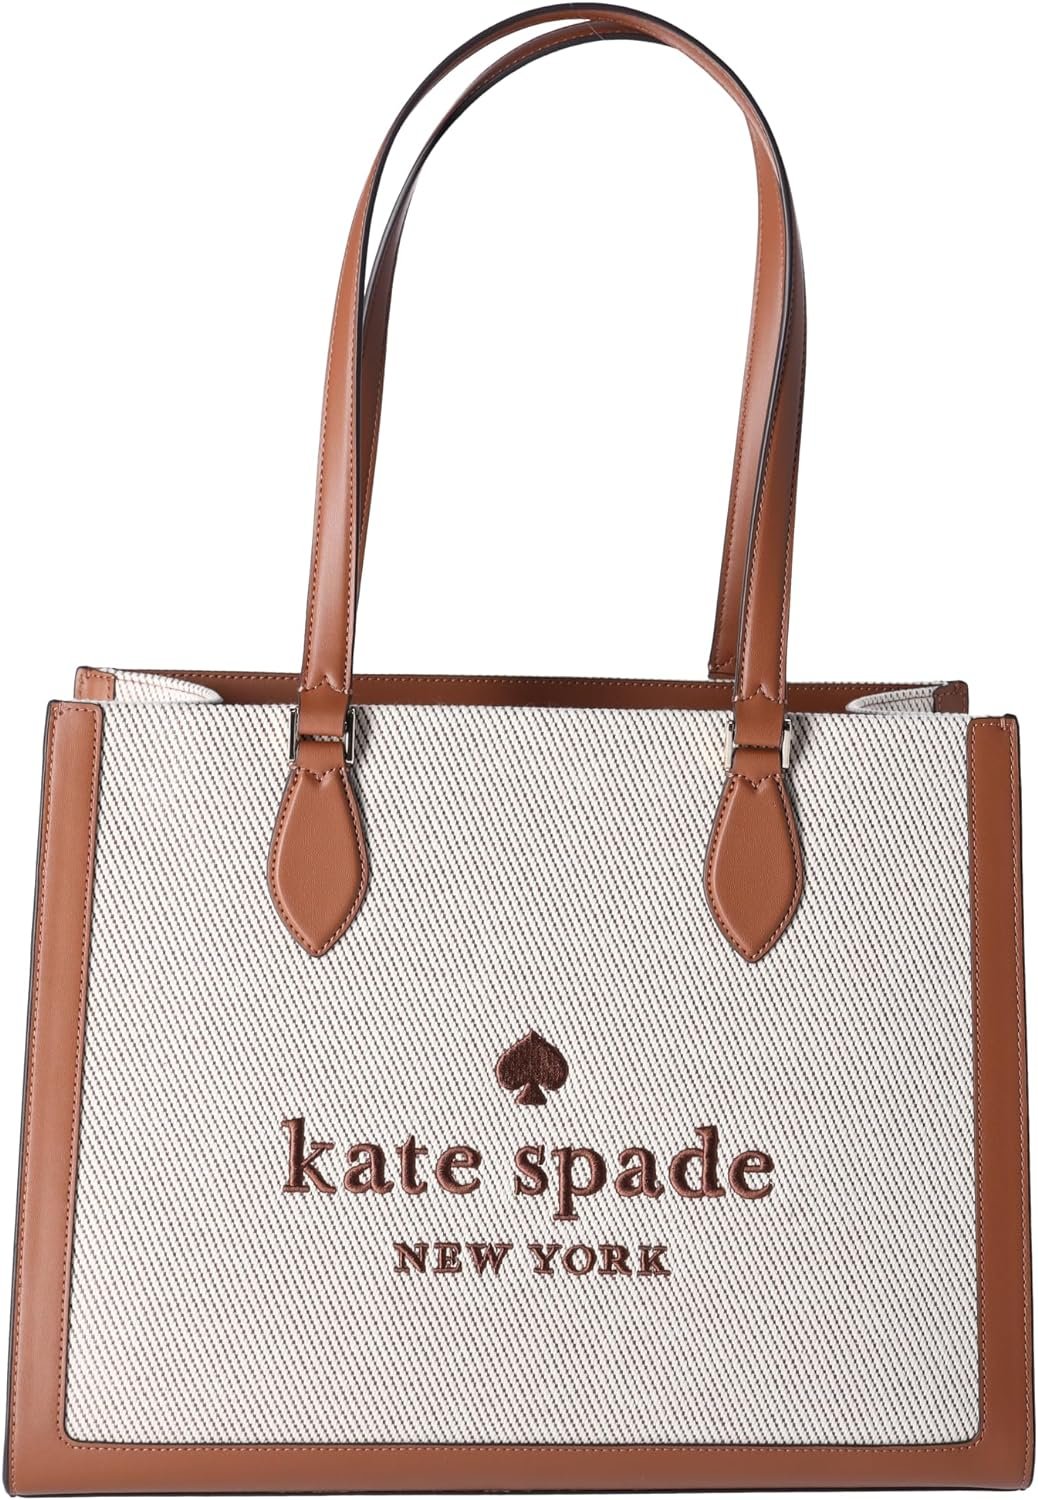 Kate Spade KF508 Ellie Canvas Leather Large Shoulder Tote Warm Gingerbread